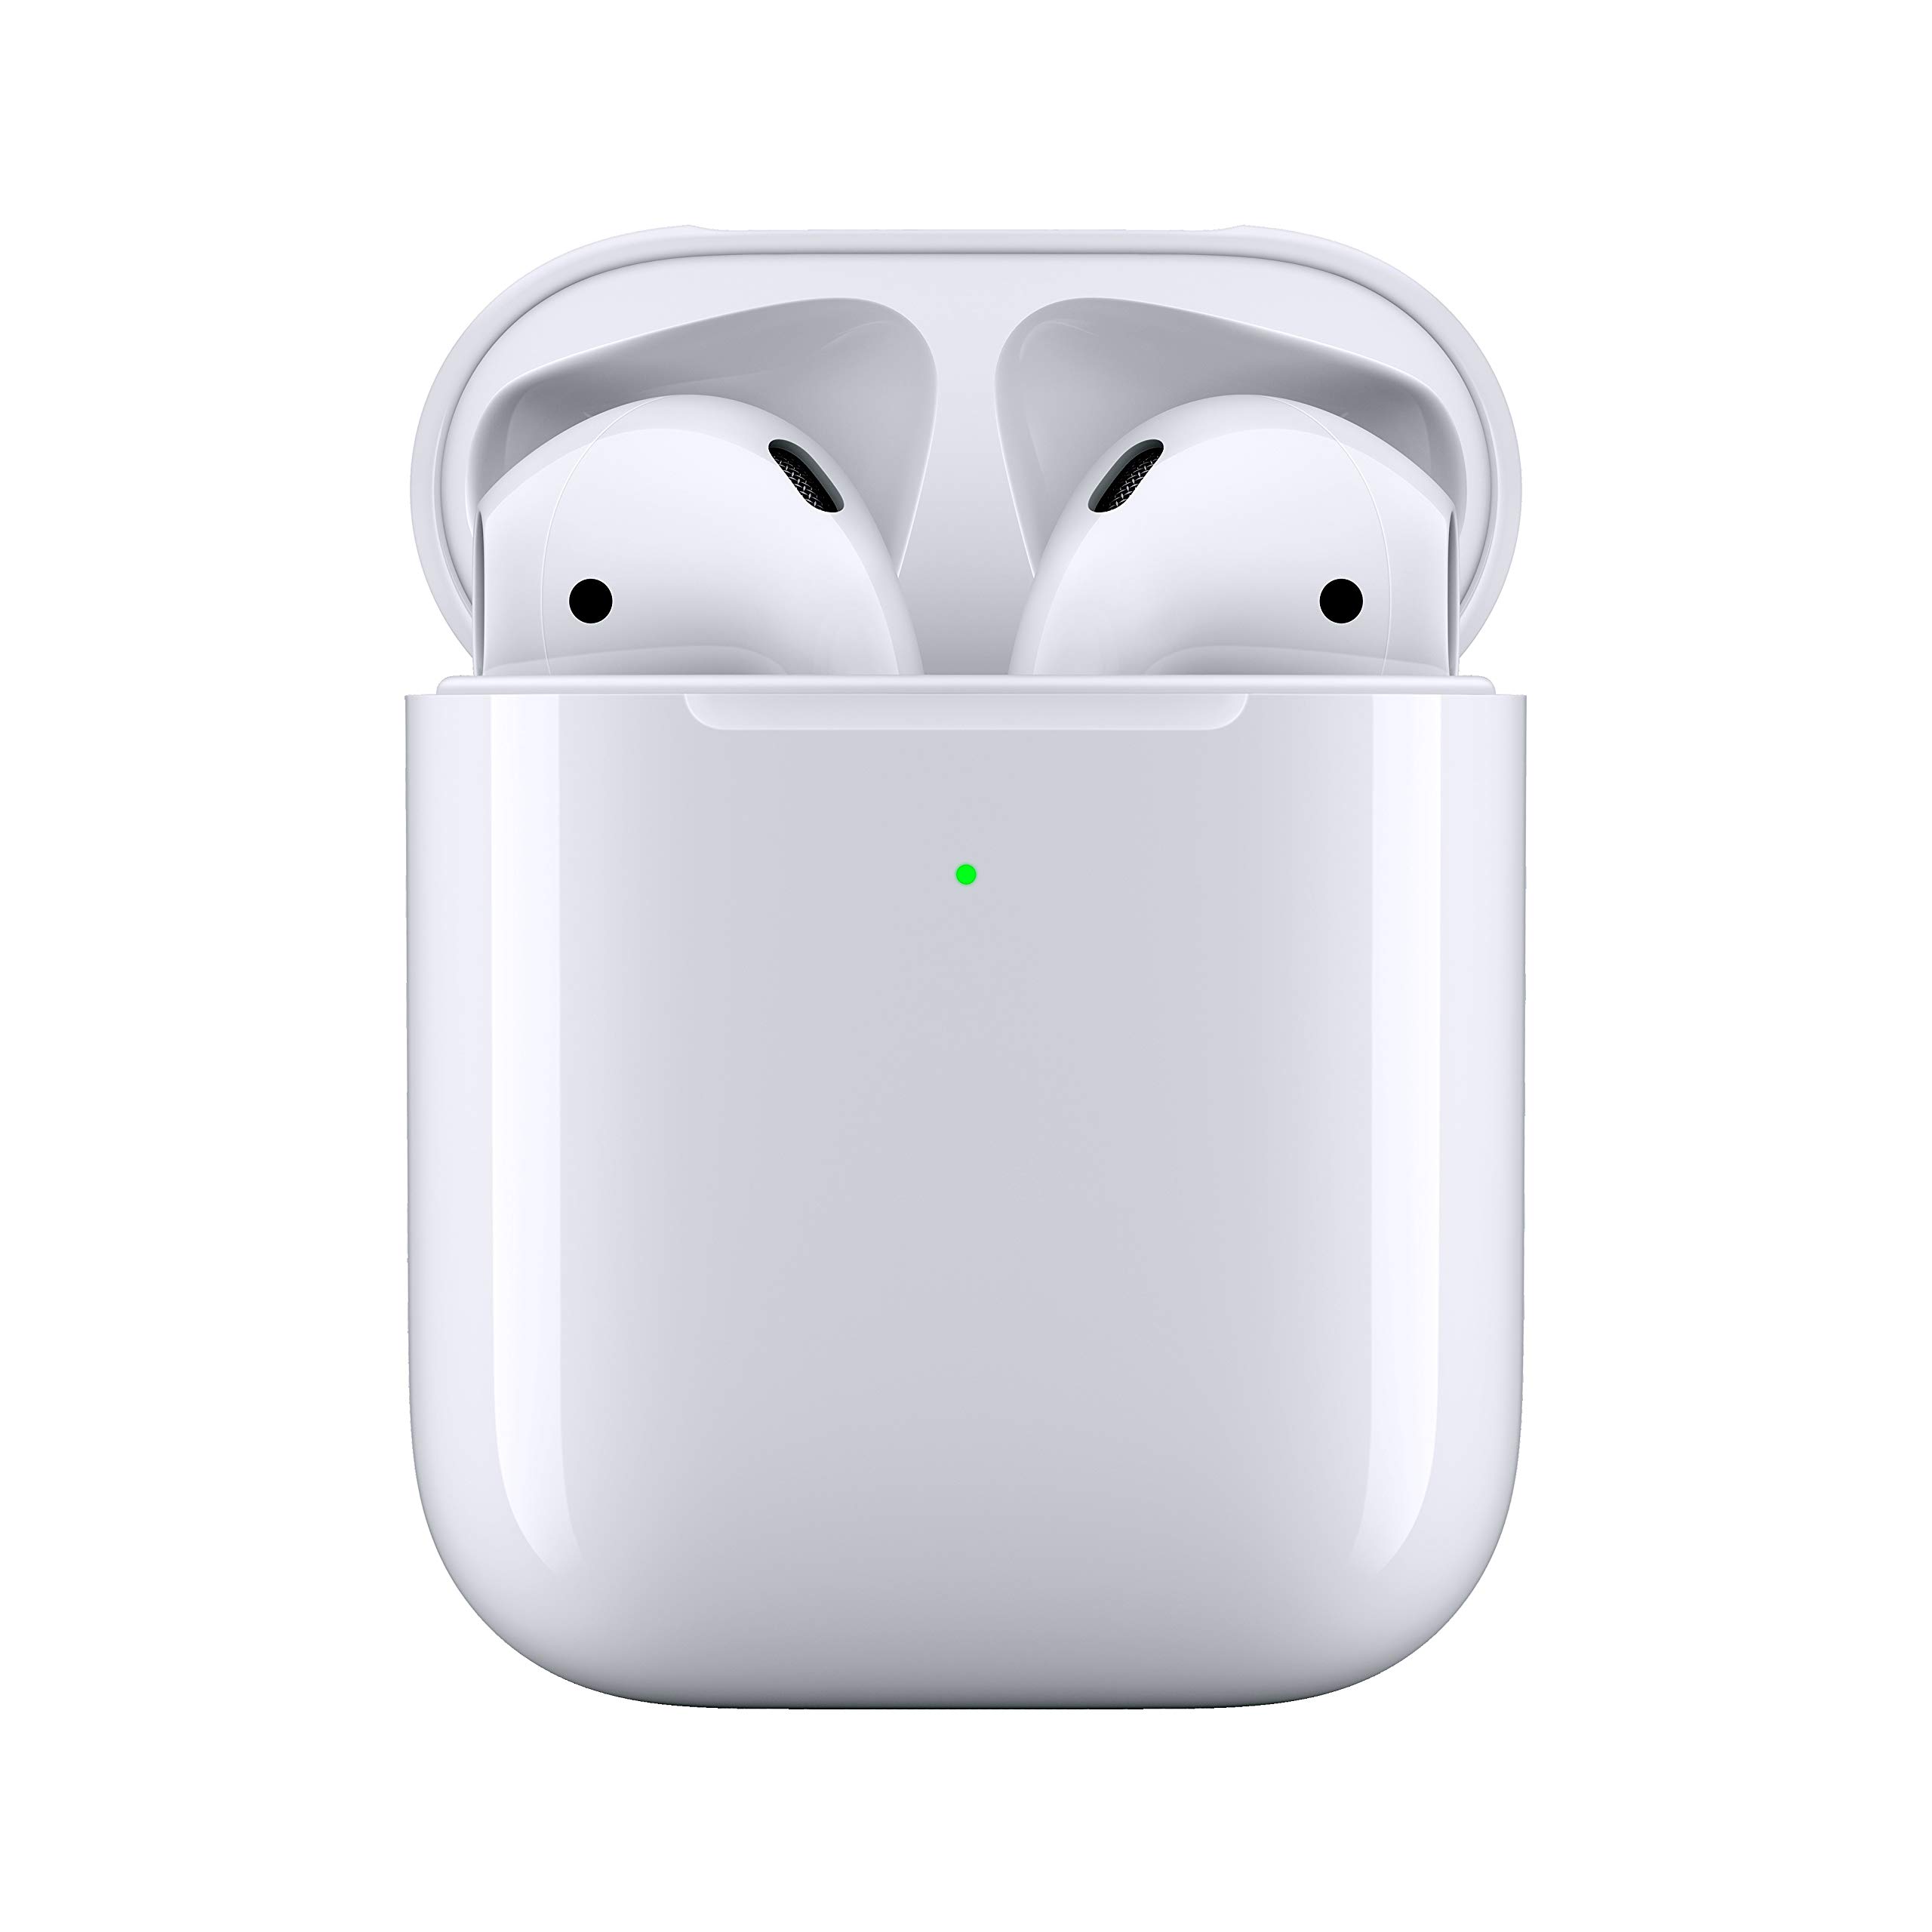 Tai nghe Airpods - Hộp sạc không dây - Màu trắng - Kết nối Bluetooth - Nhập khẩu Mỹ